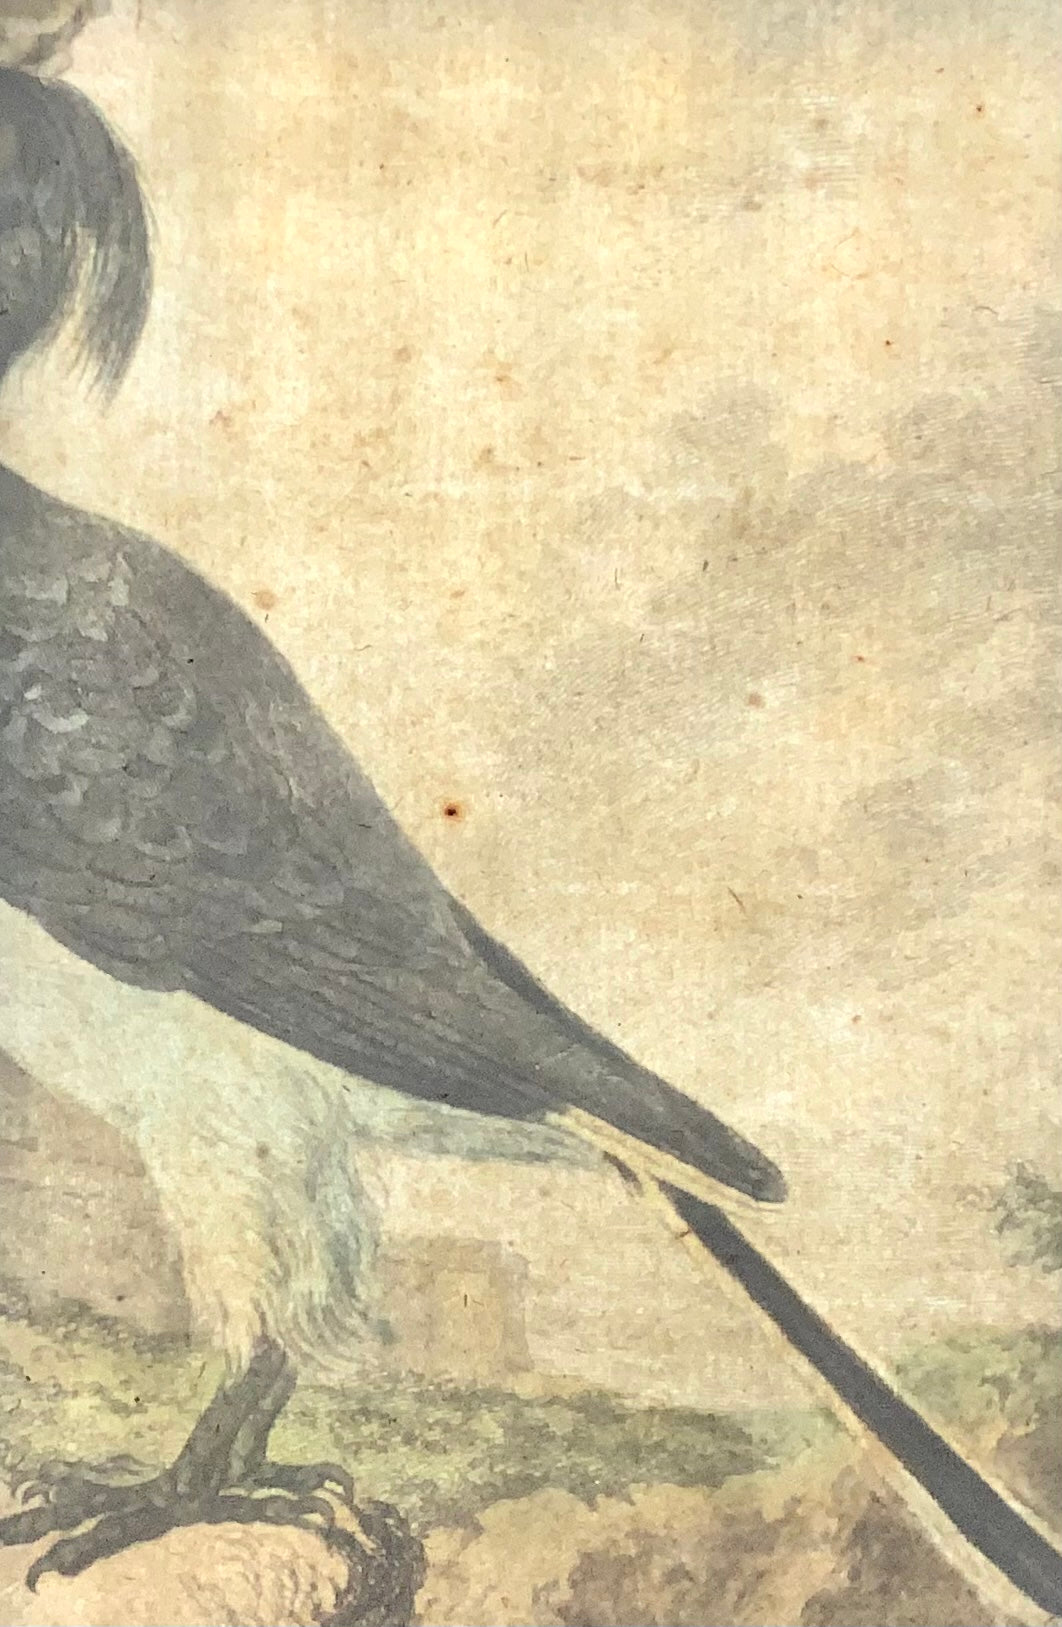 1775 Calao, Bucero, incisione su rame finemente colorata a mano in quarto, Ornitologia